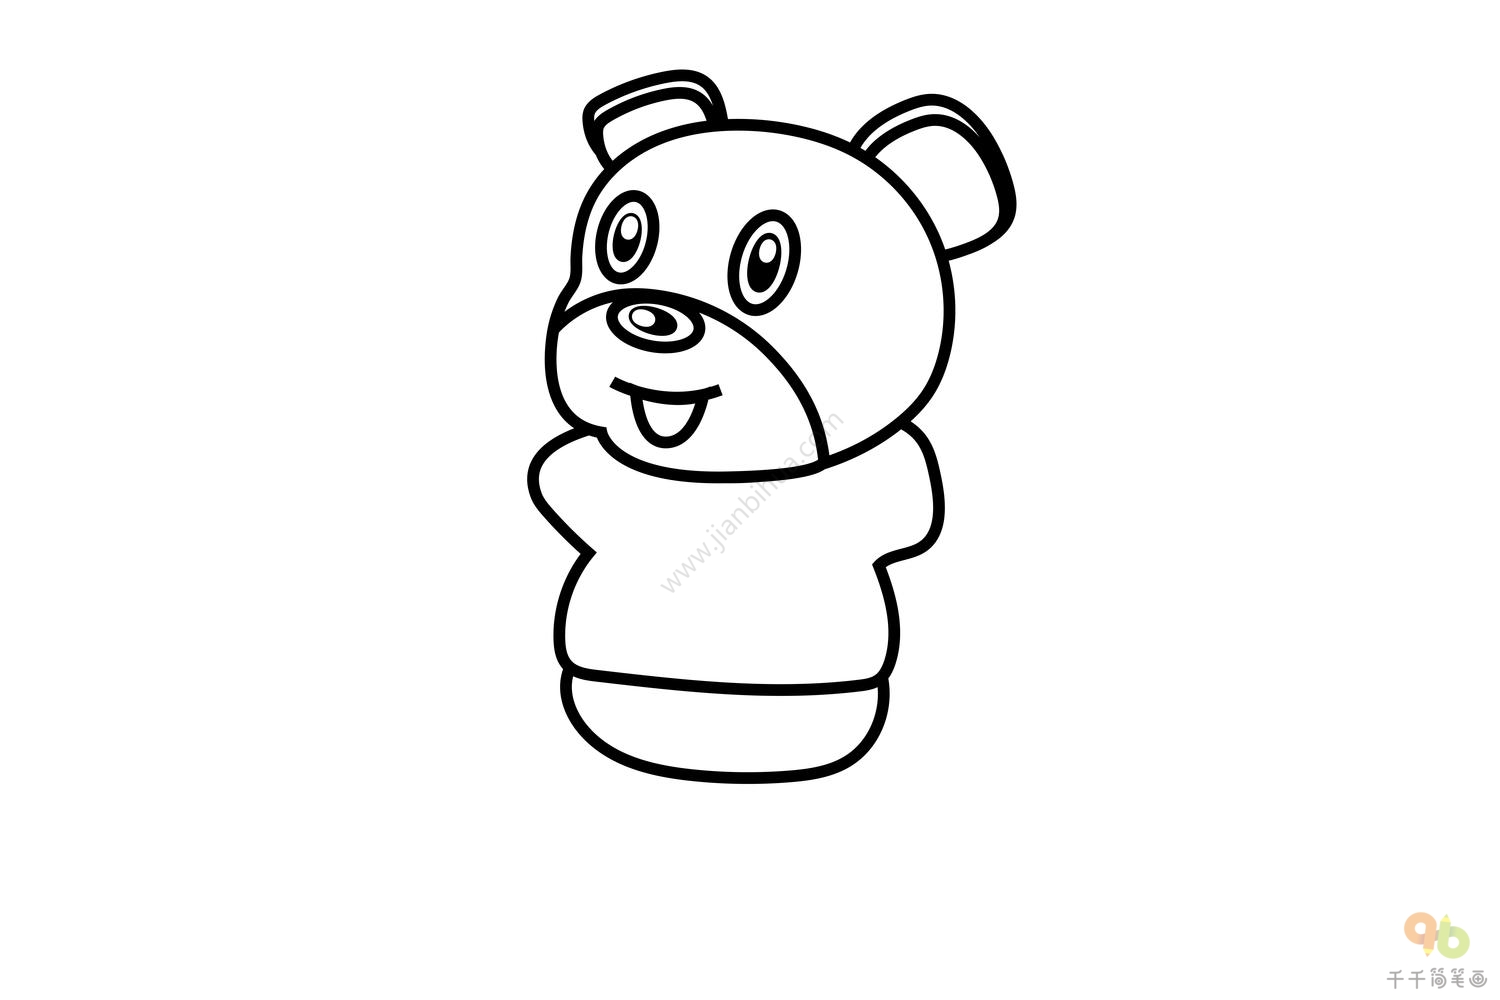 可爱的萌萌哒的小熊怎么绘画 快速画好一只可爱的小熊素材教程[ 图片/5P ] - 优艺星